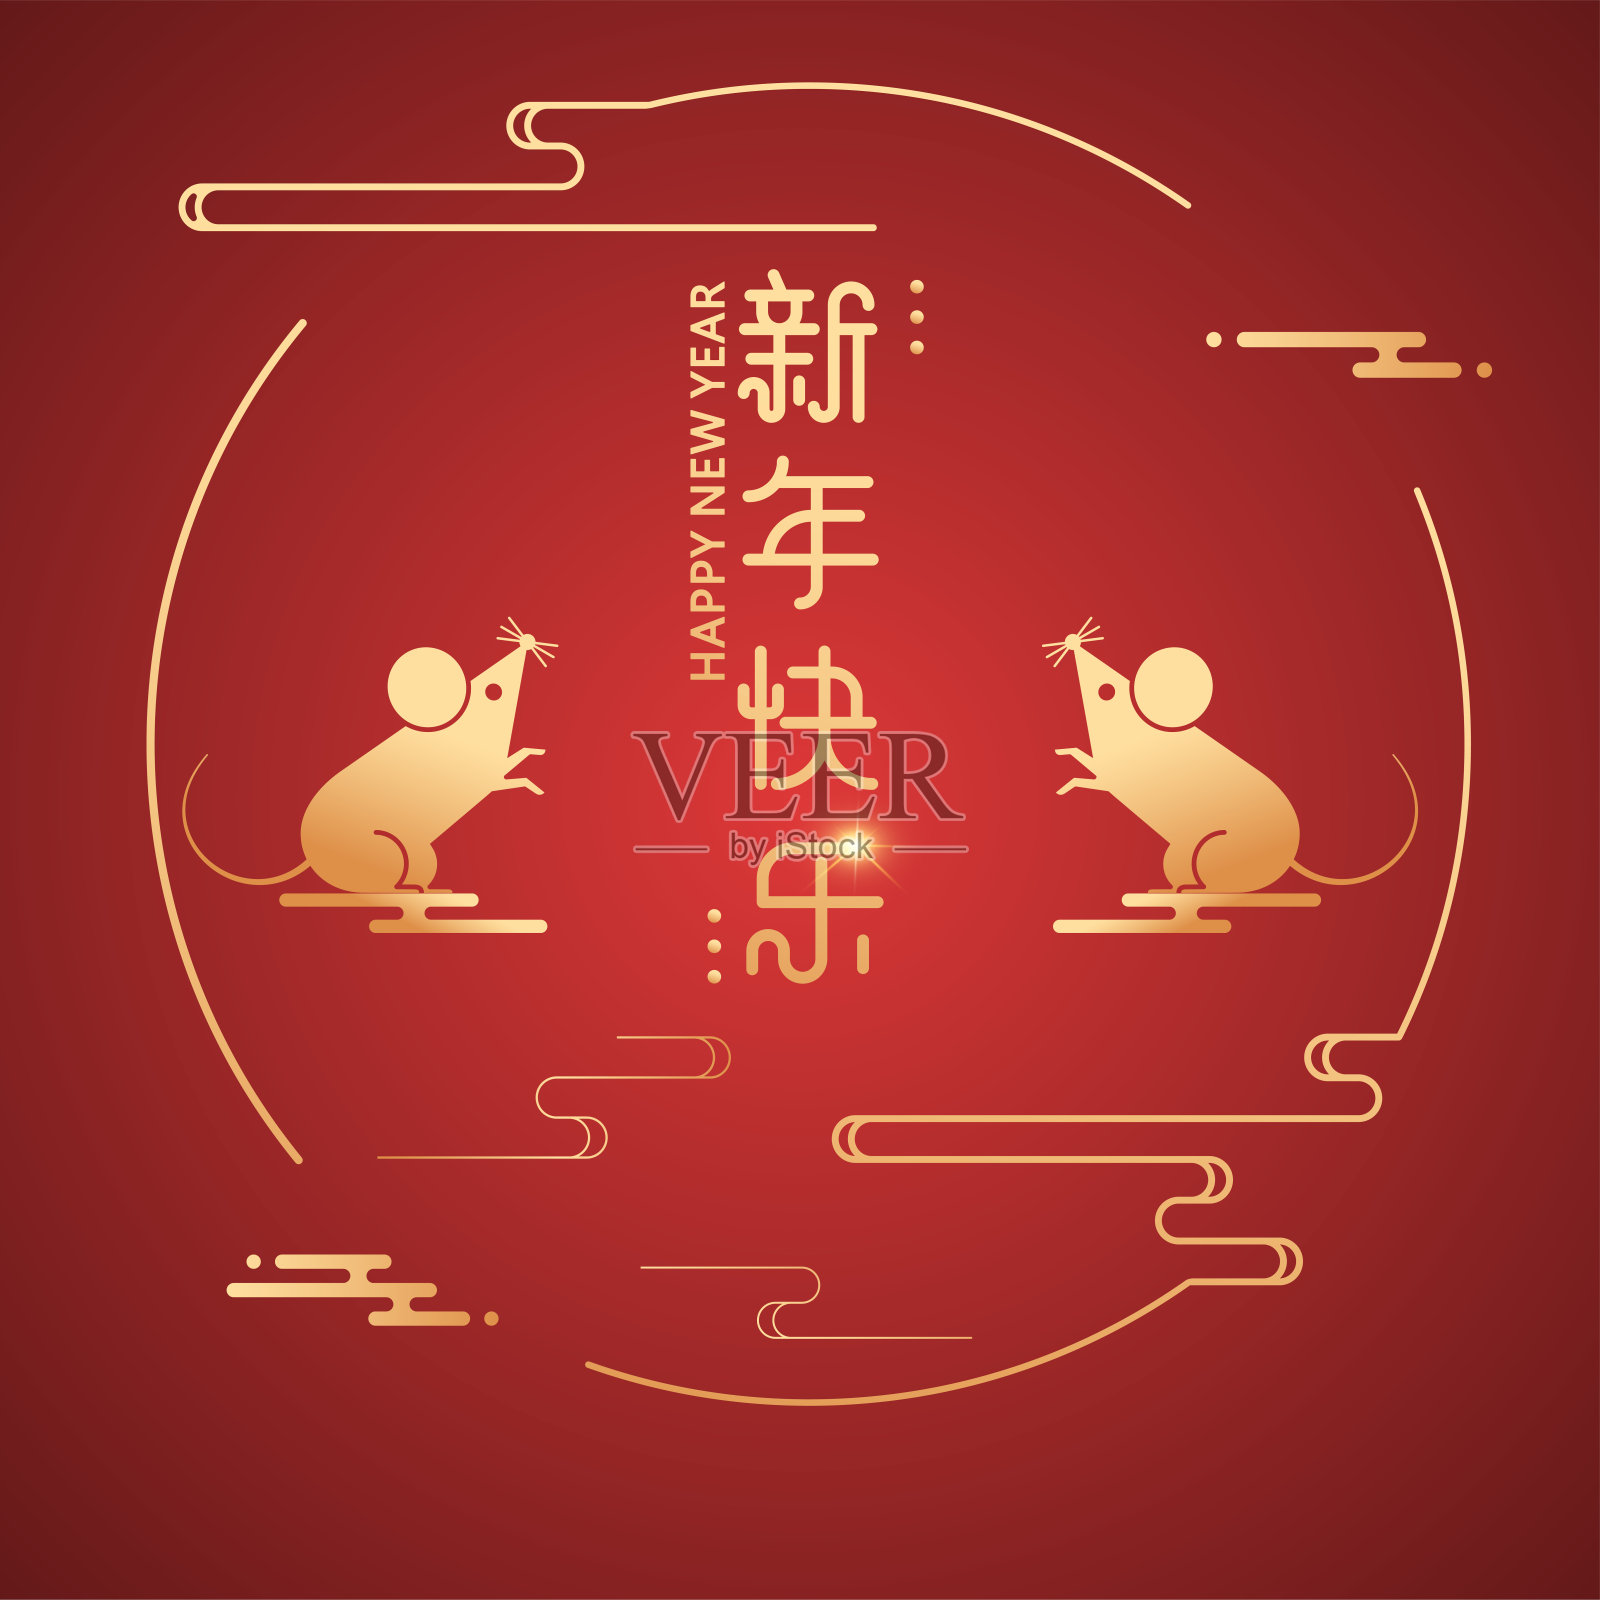 2020鼠年卡通插图。中国传统元素矢量插图，旗帜和封面，圆形框架与金色鼠标。汉字的意思是:新年快乐。设计模板素材